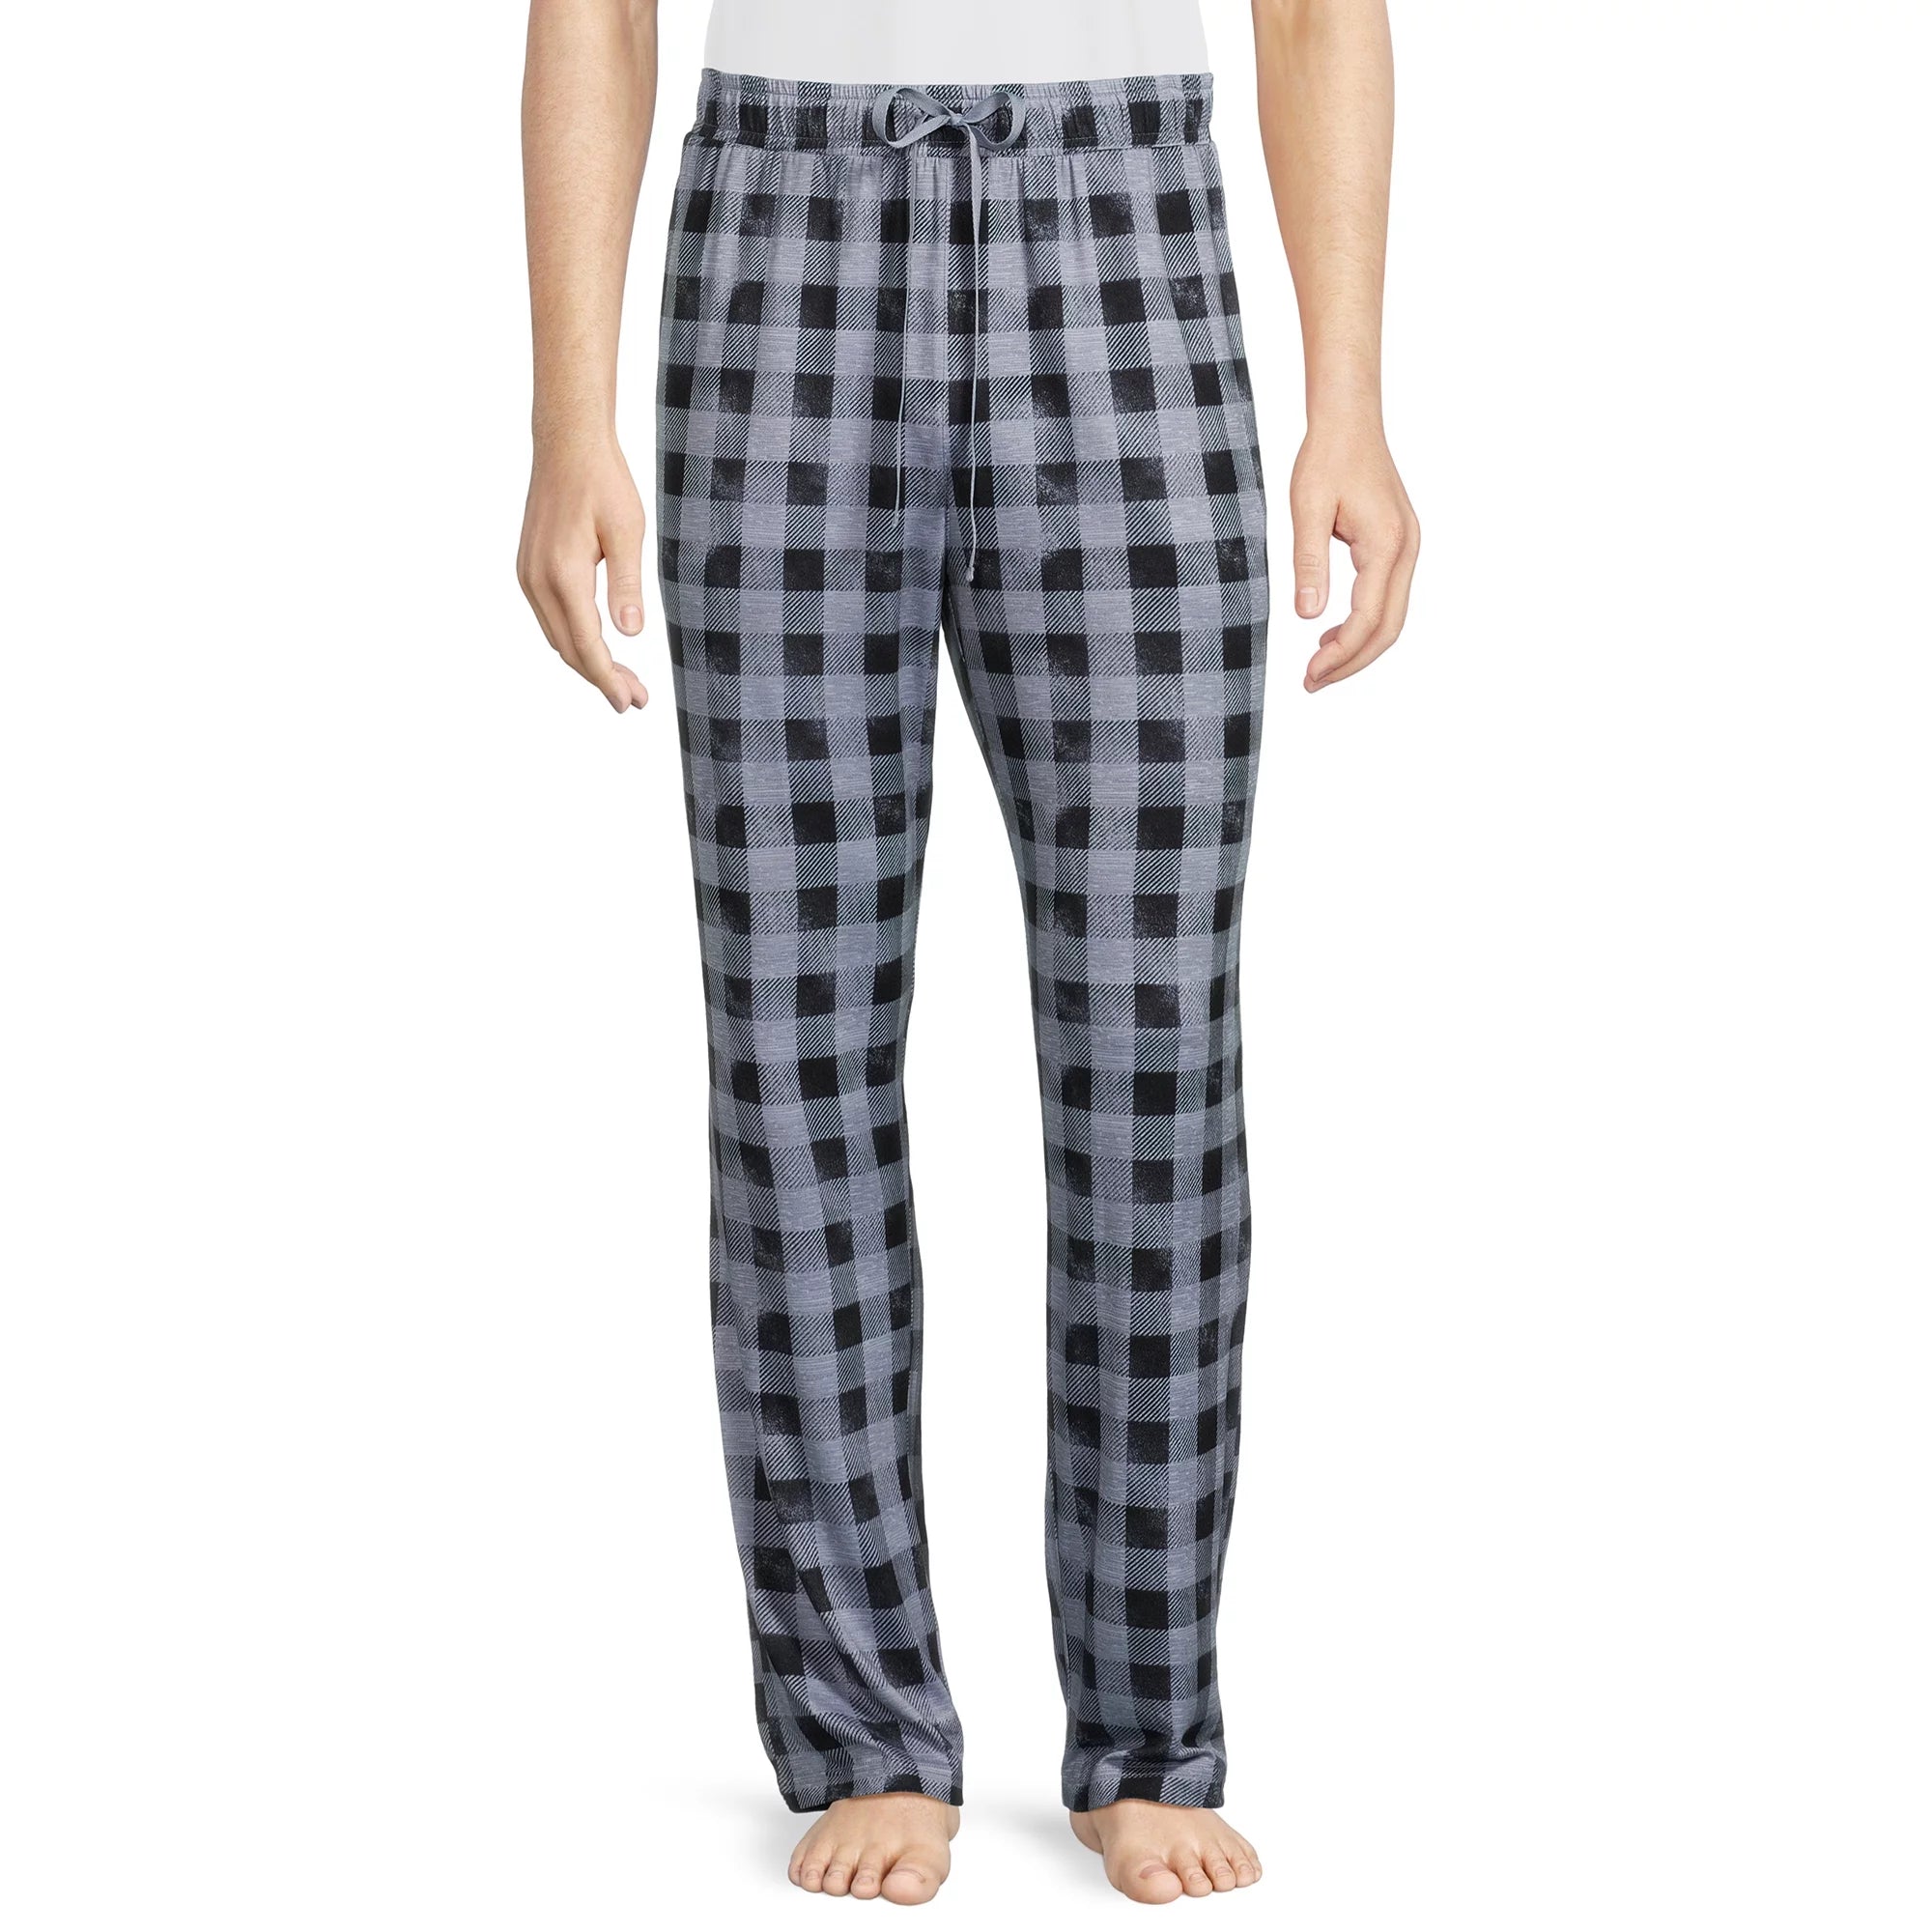 Men's Pull-On Luxe Sleep Pants (3 Styles)